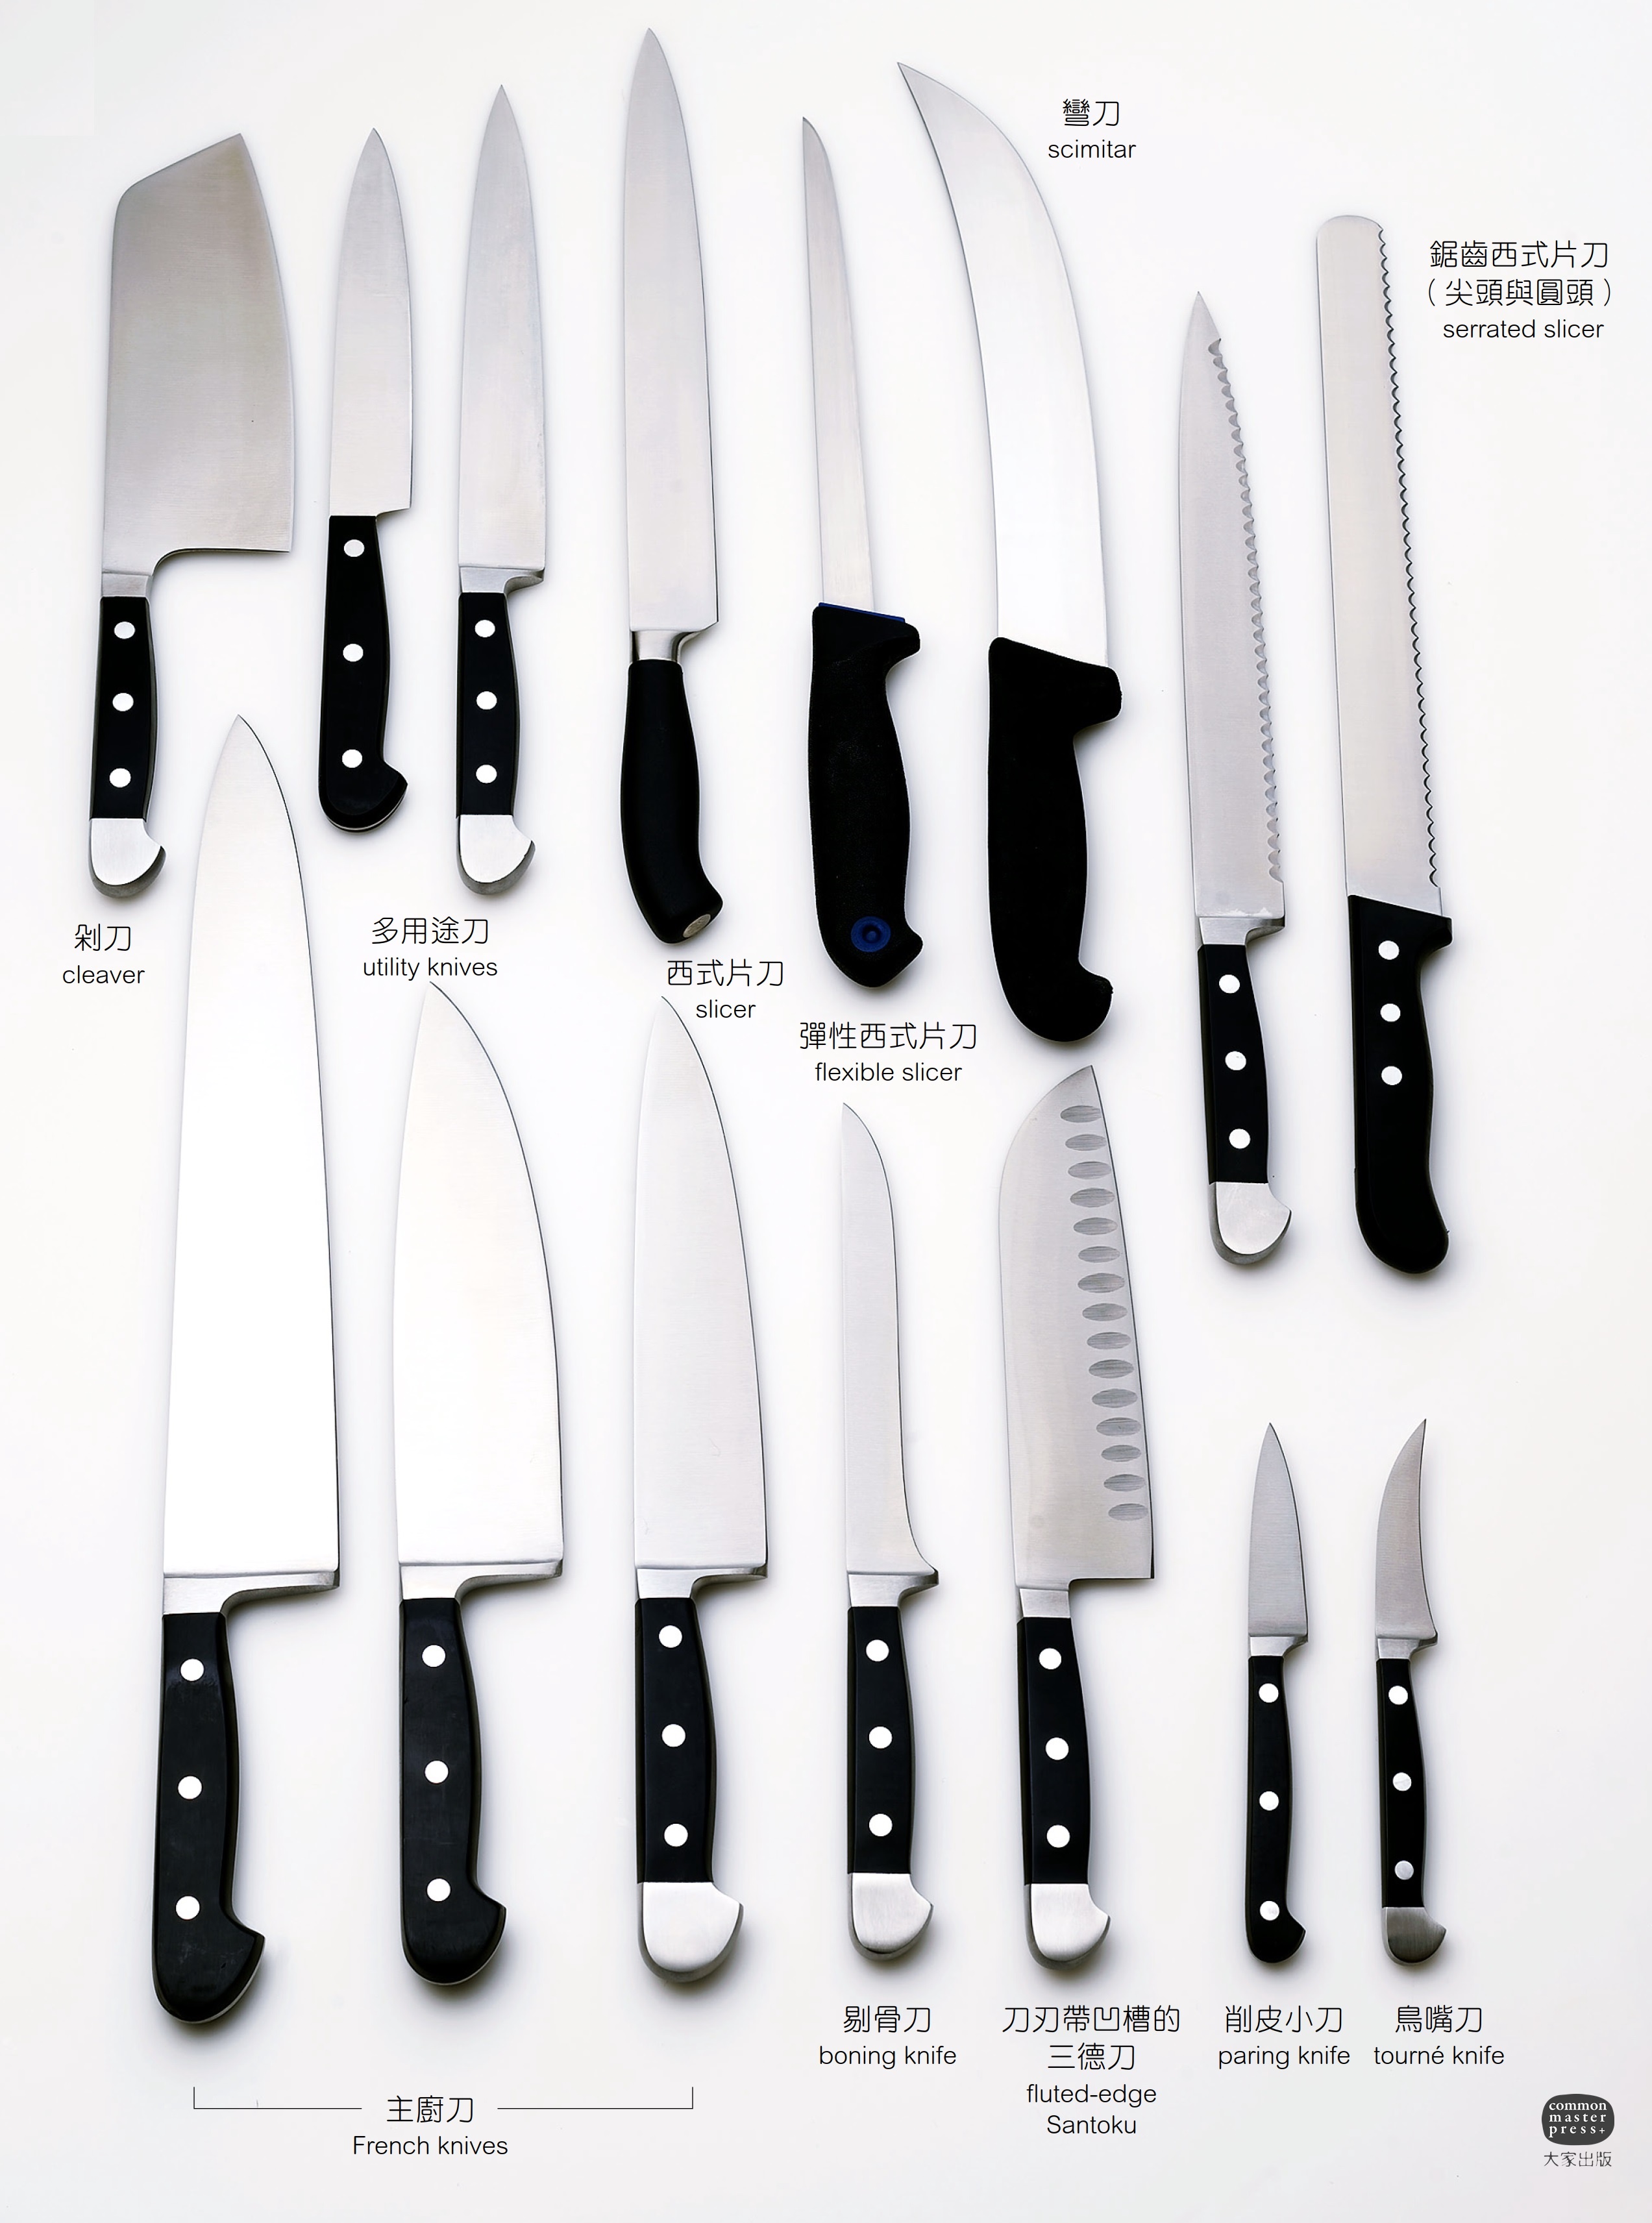 Нож перевод на русский. Формы японских ножей. Types of Knives. Скимитар кухонный нож. Японские ножи виды и названия.